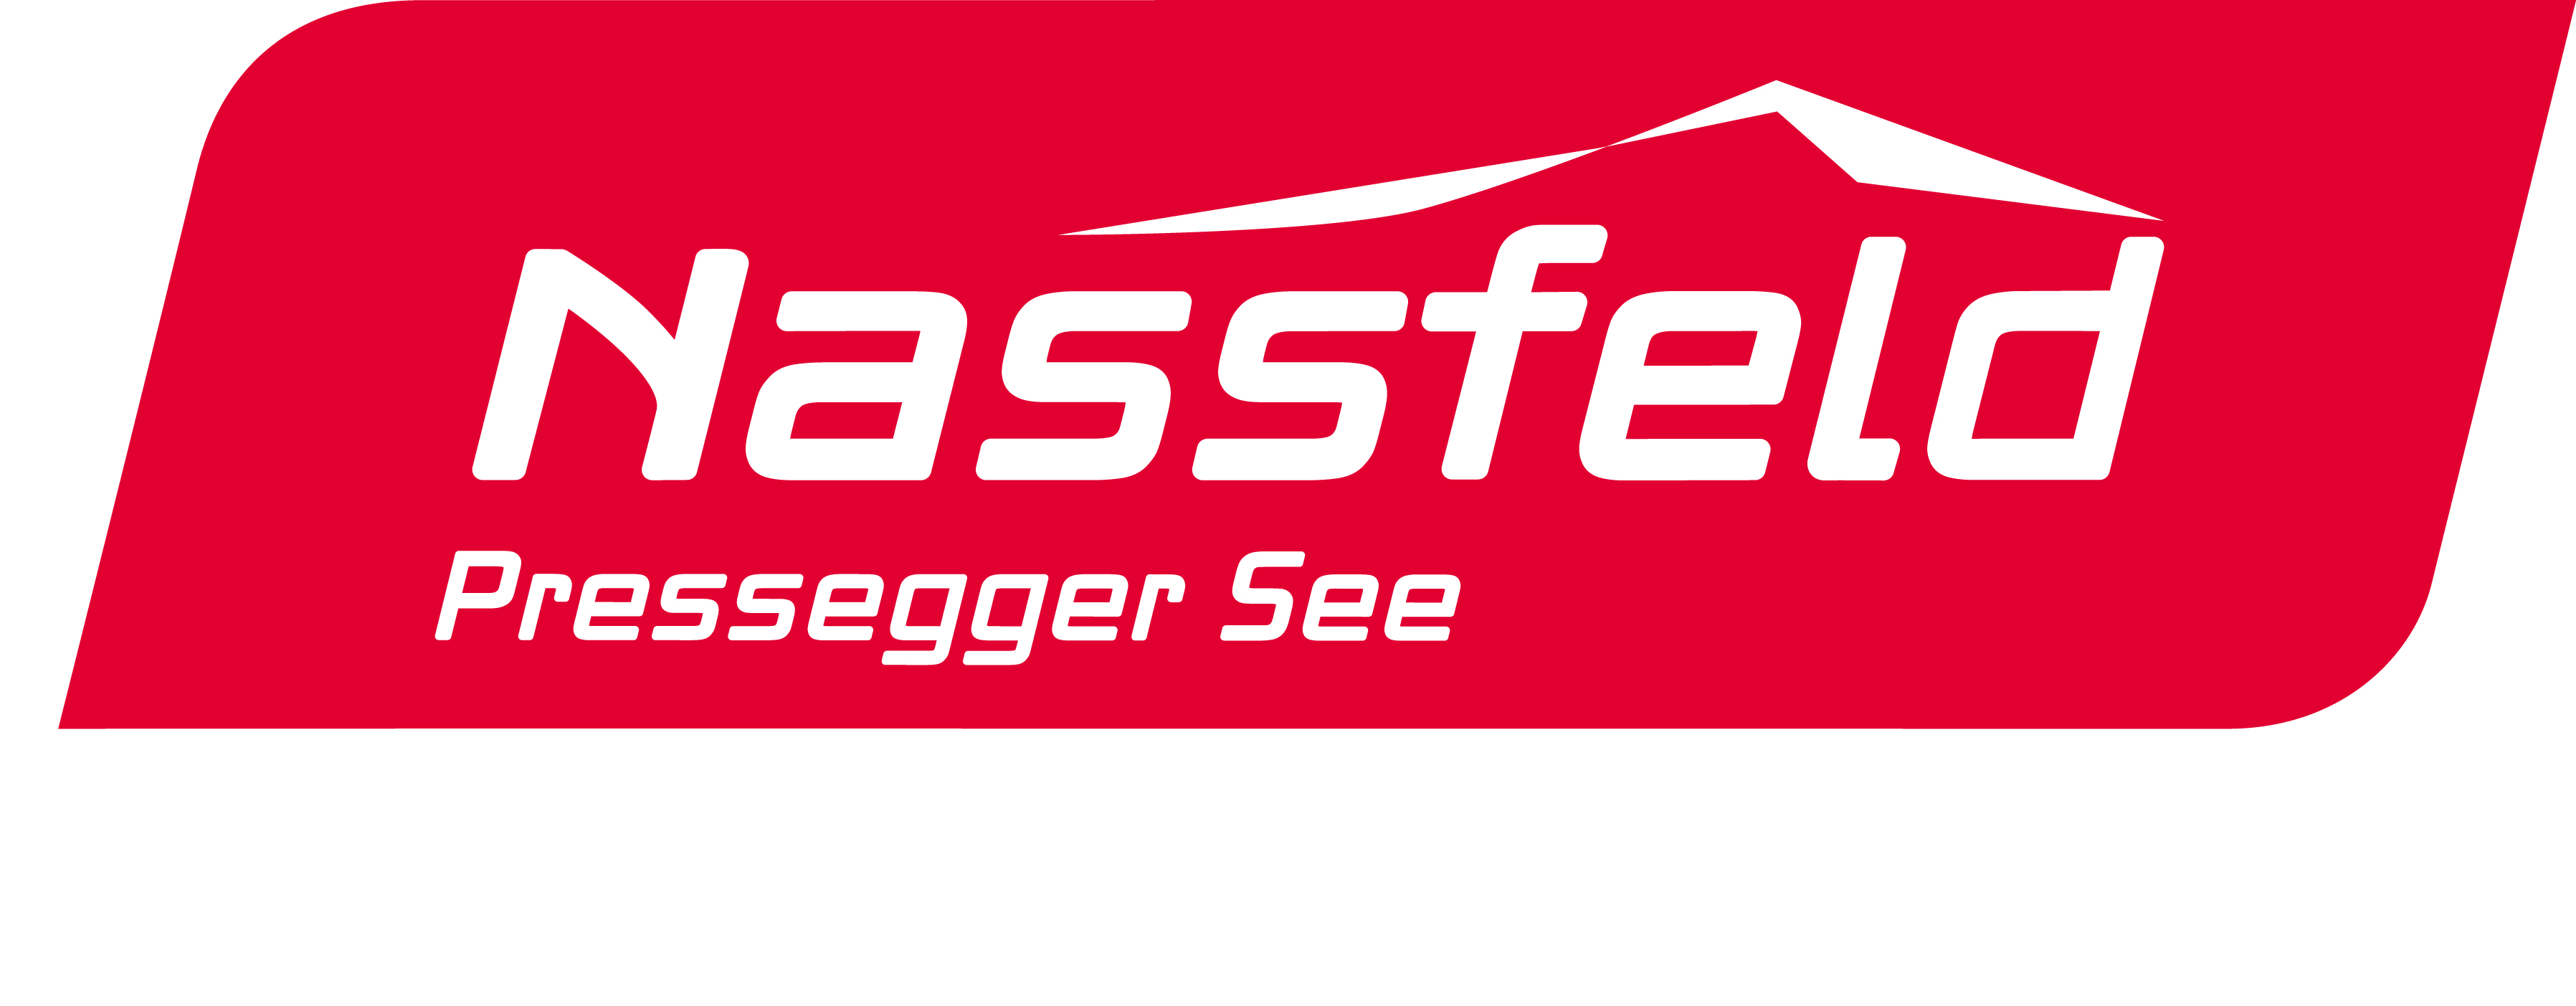 Region Nassfeld-Pressegger See